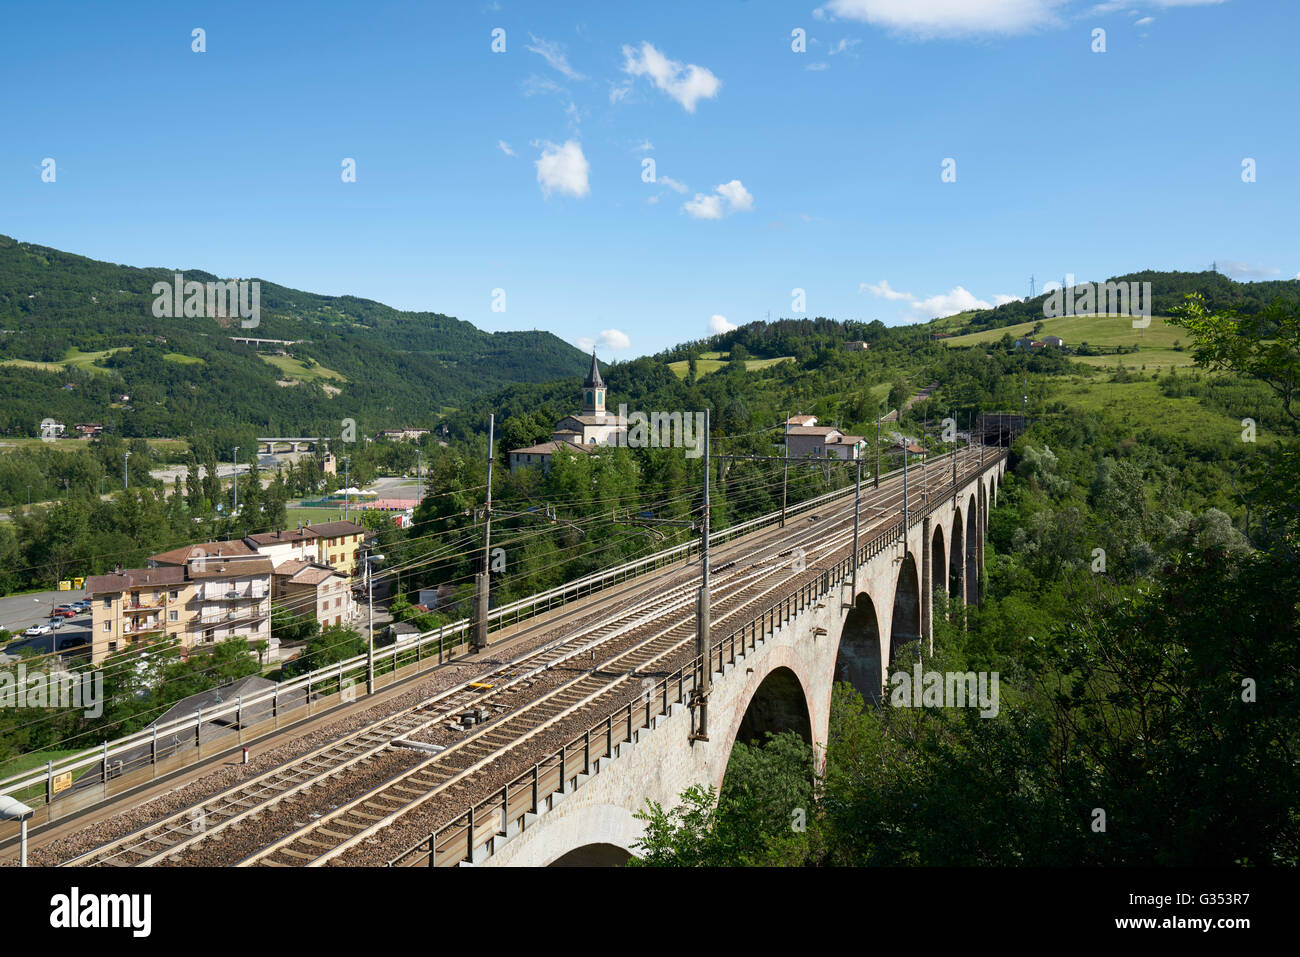 Grizzana Morandi, a village in northern Italy. Piandisetta. Train bridge in the Northern Italian country side. Stock Photo